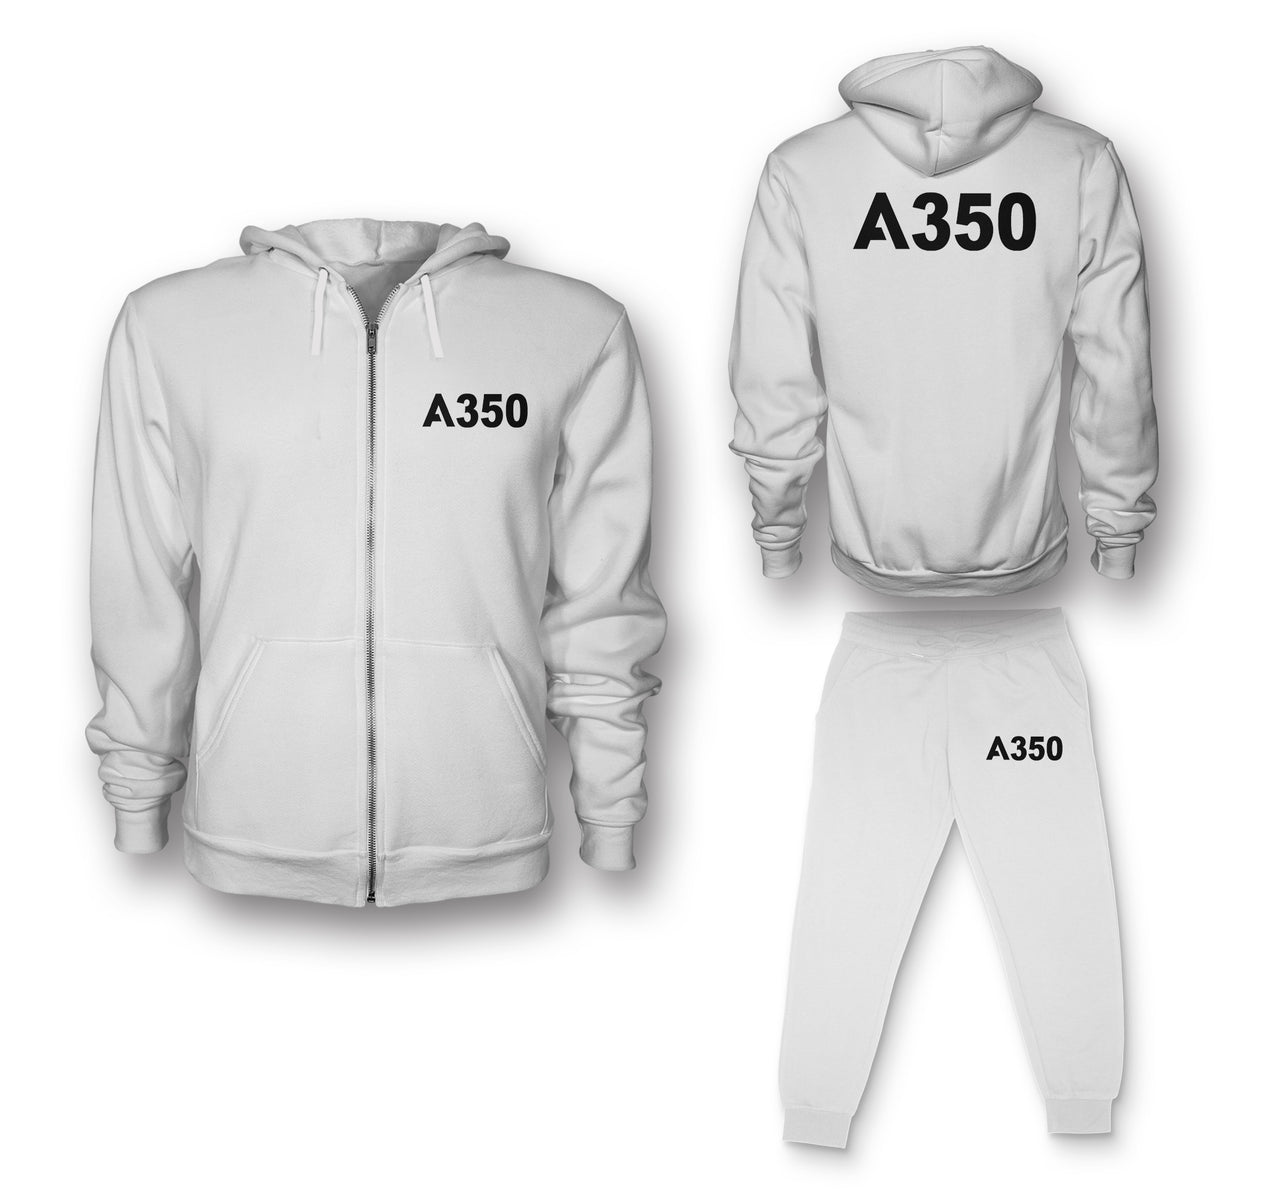 A350 Flat Text Designed Zipped Hoodies & Sweatpants Set